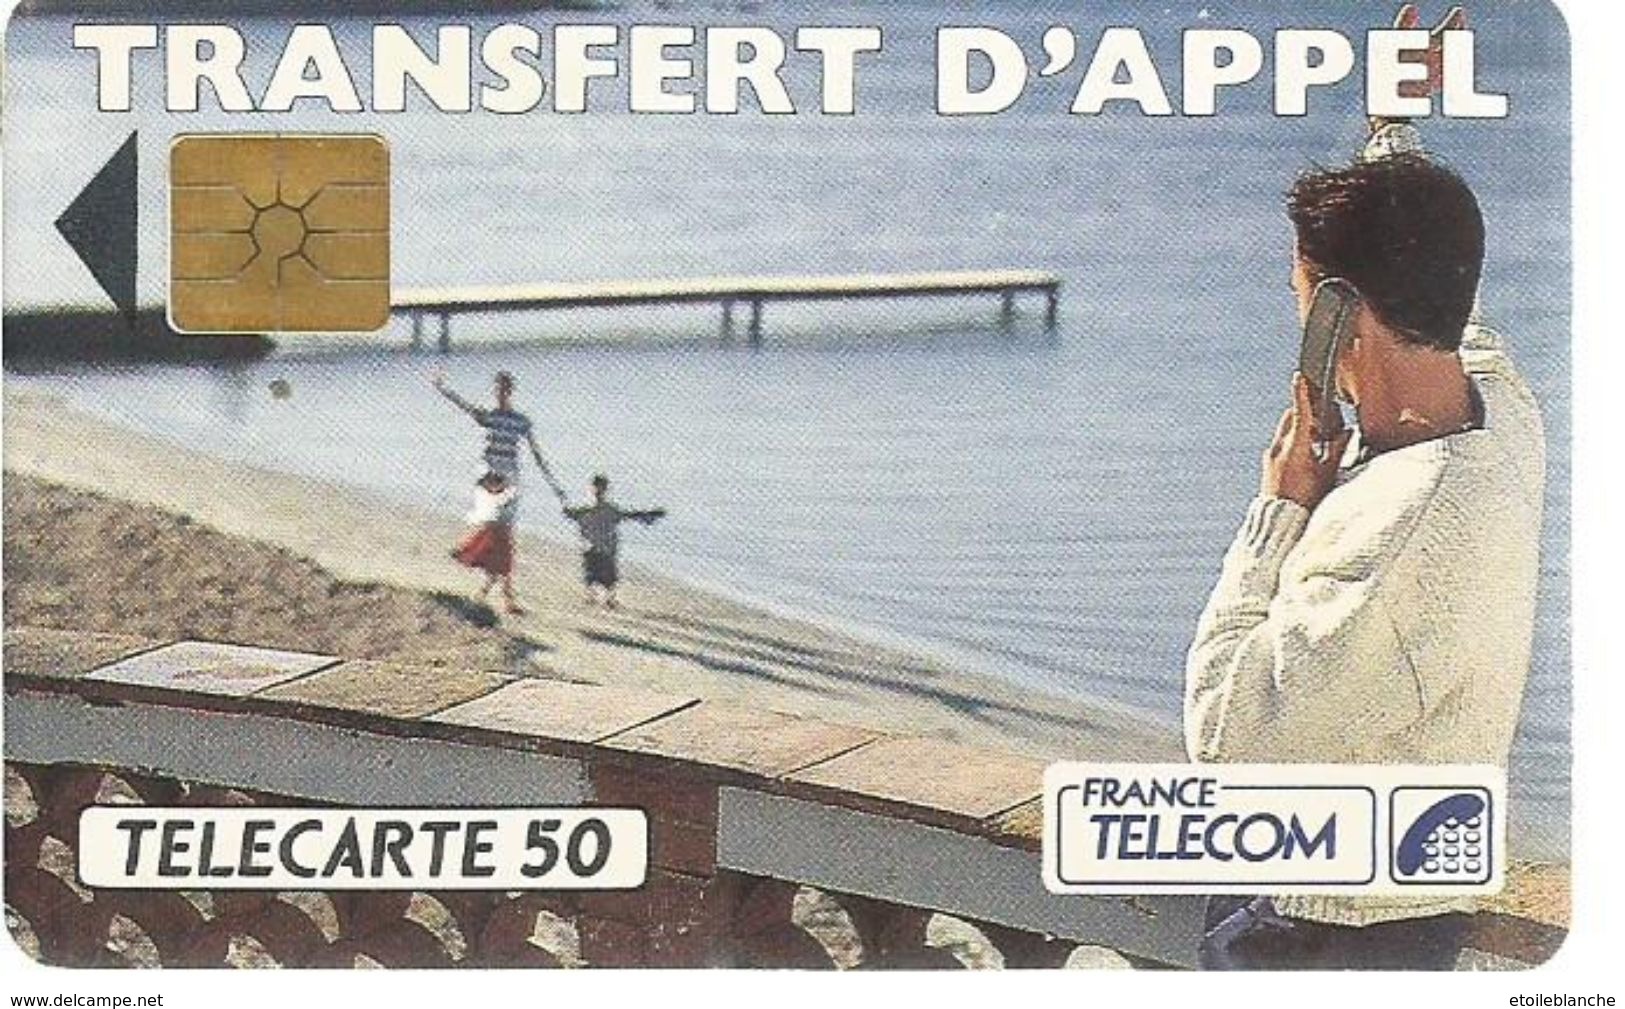 Telecarte France Telecom 1992 - Publicité, Transfert D'appel - Homme En Vacances, Plage, Famille - Operadores De Telecom